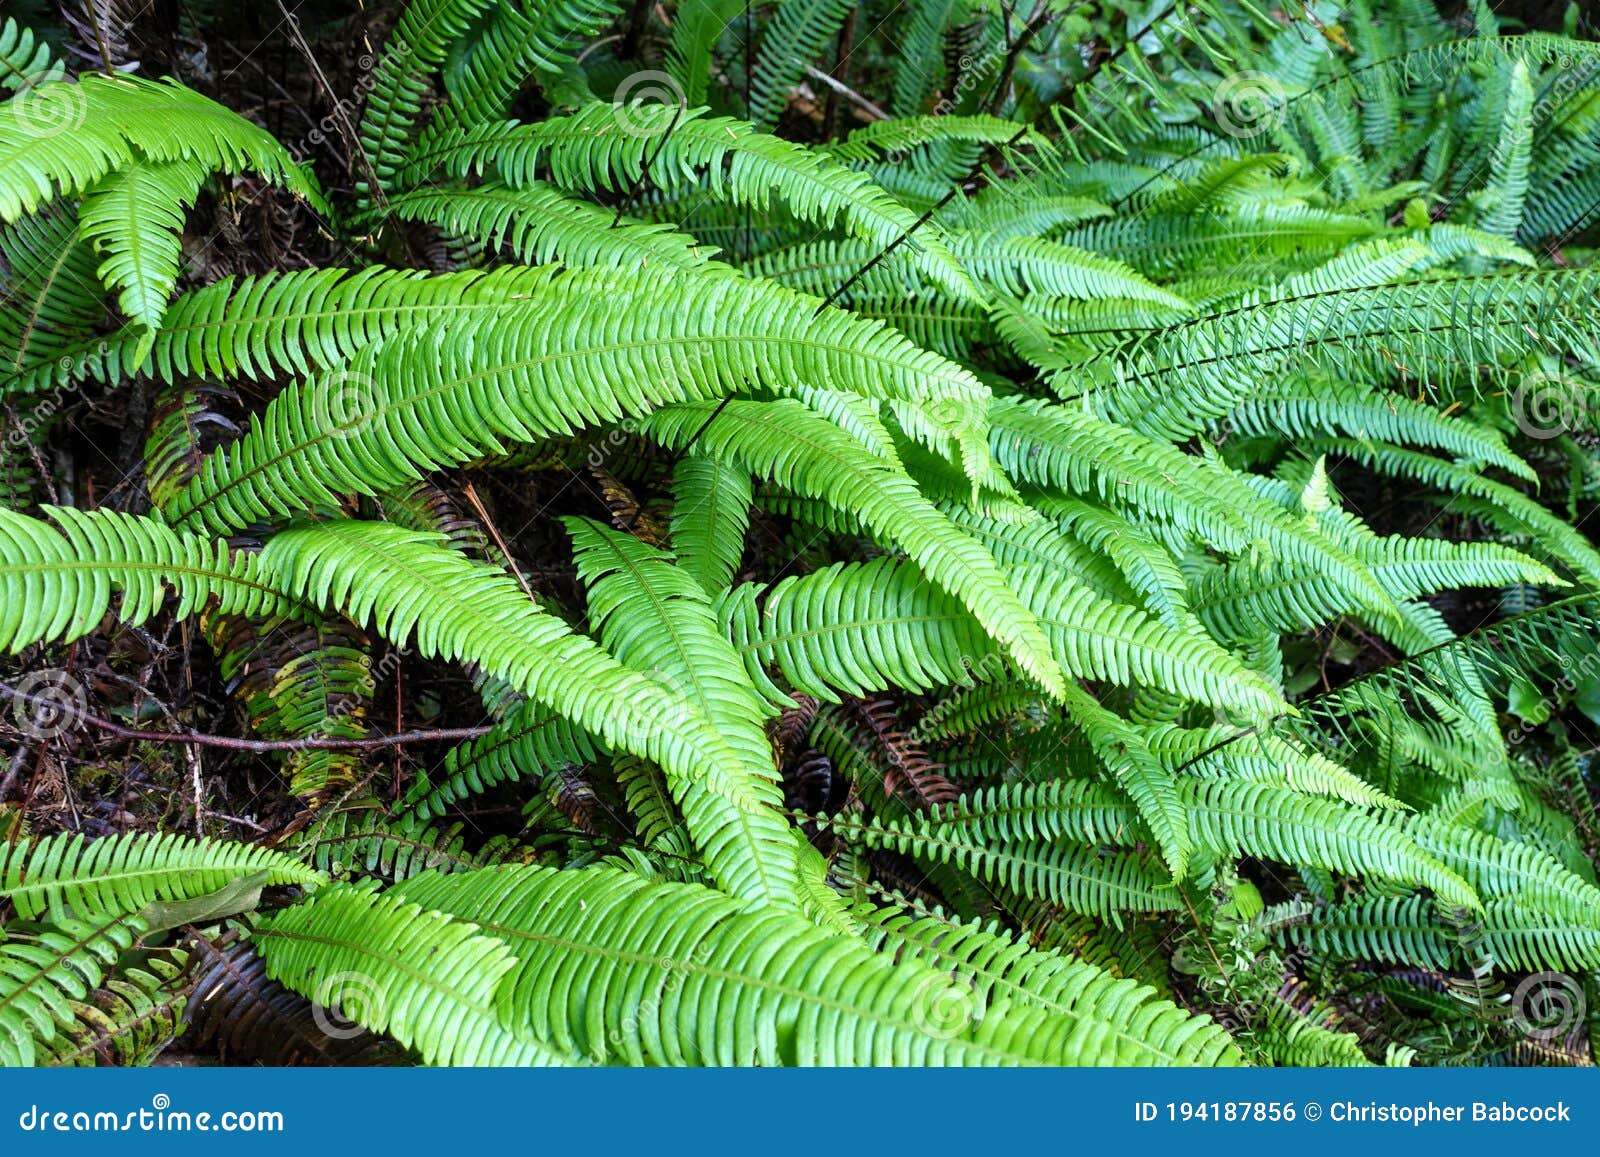 a closeup photo of fresh green ferns, or lady ferns or athyrium filix-femina